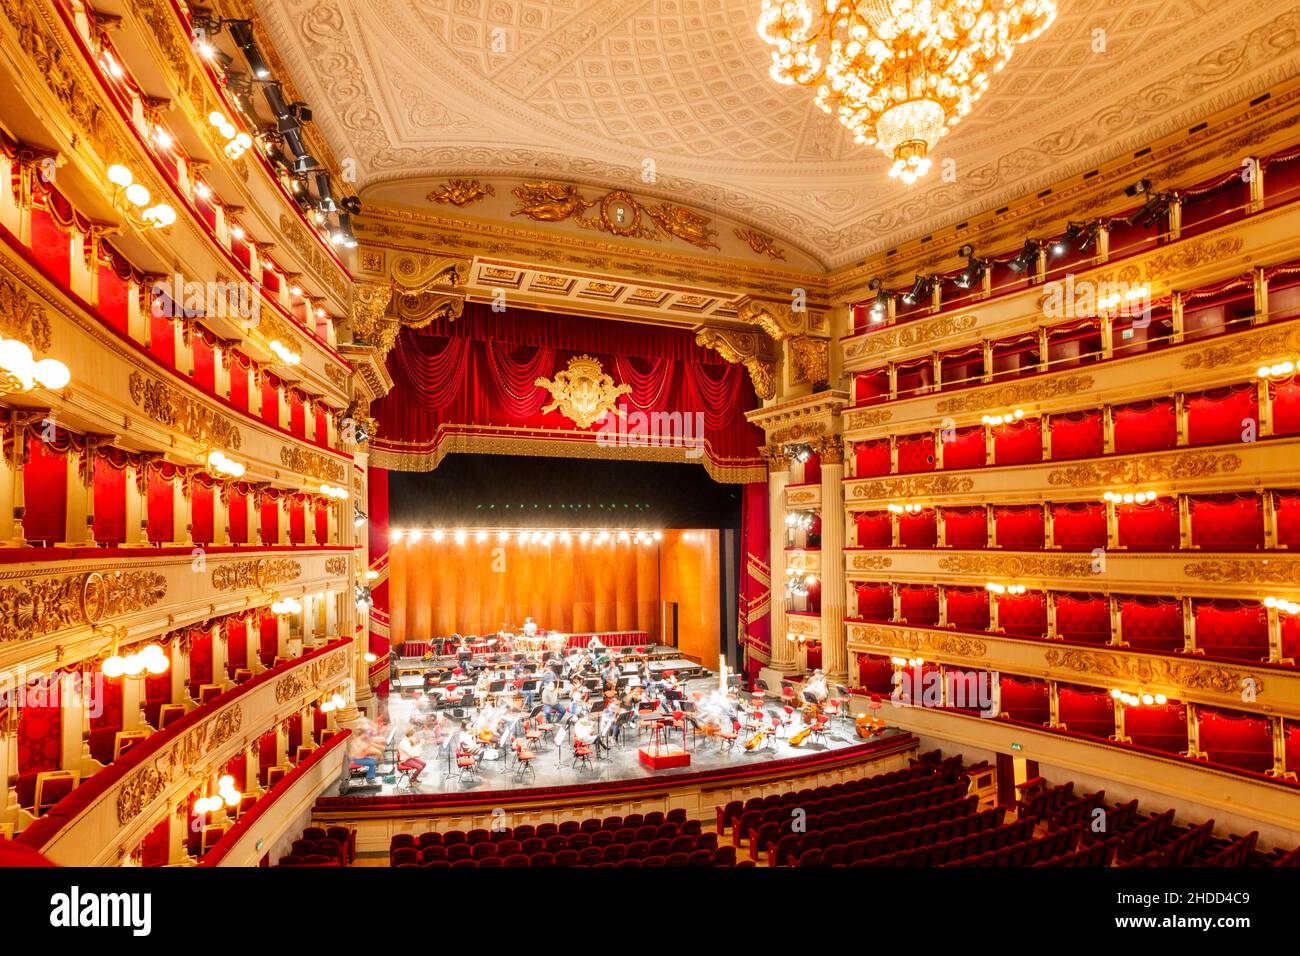 La Scala, o Teatro alla Scala, è un teatro lirico di Milano. È considerato uno dei teatri lirici e balletti più importanti del mondo. Foto Stock